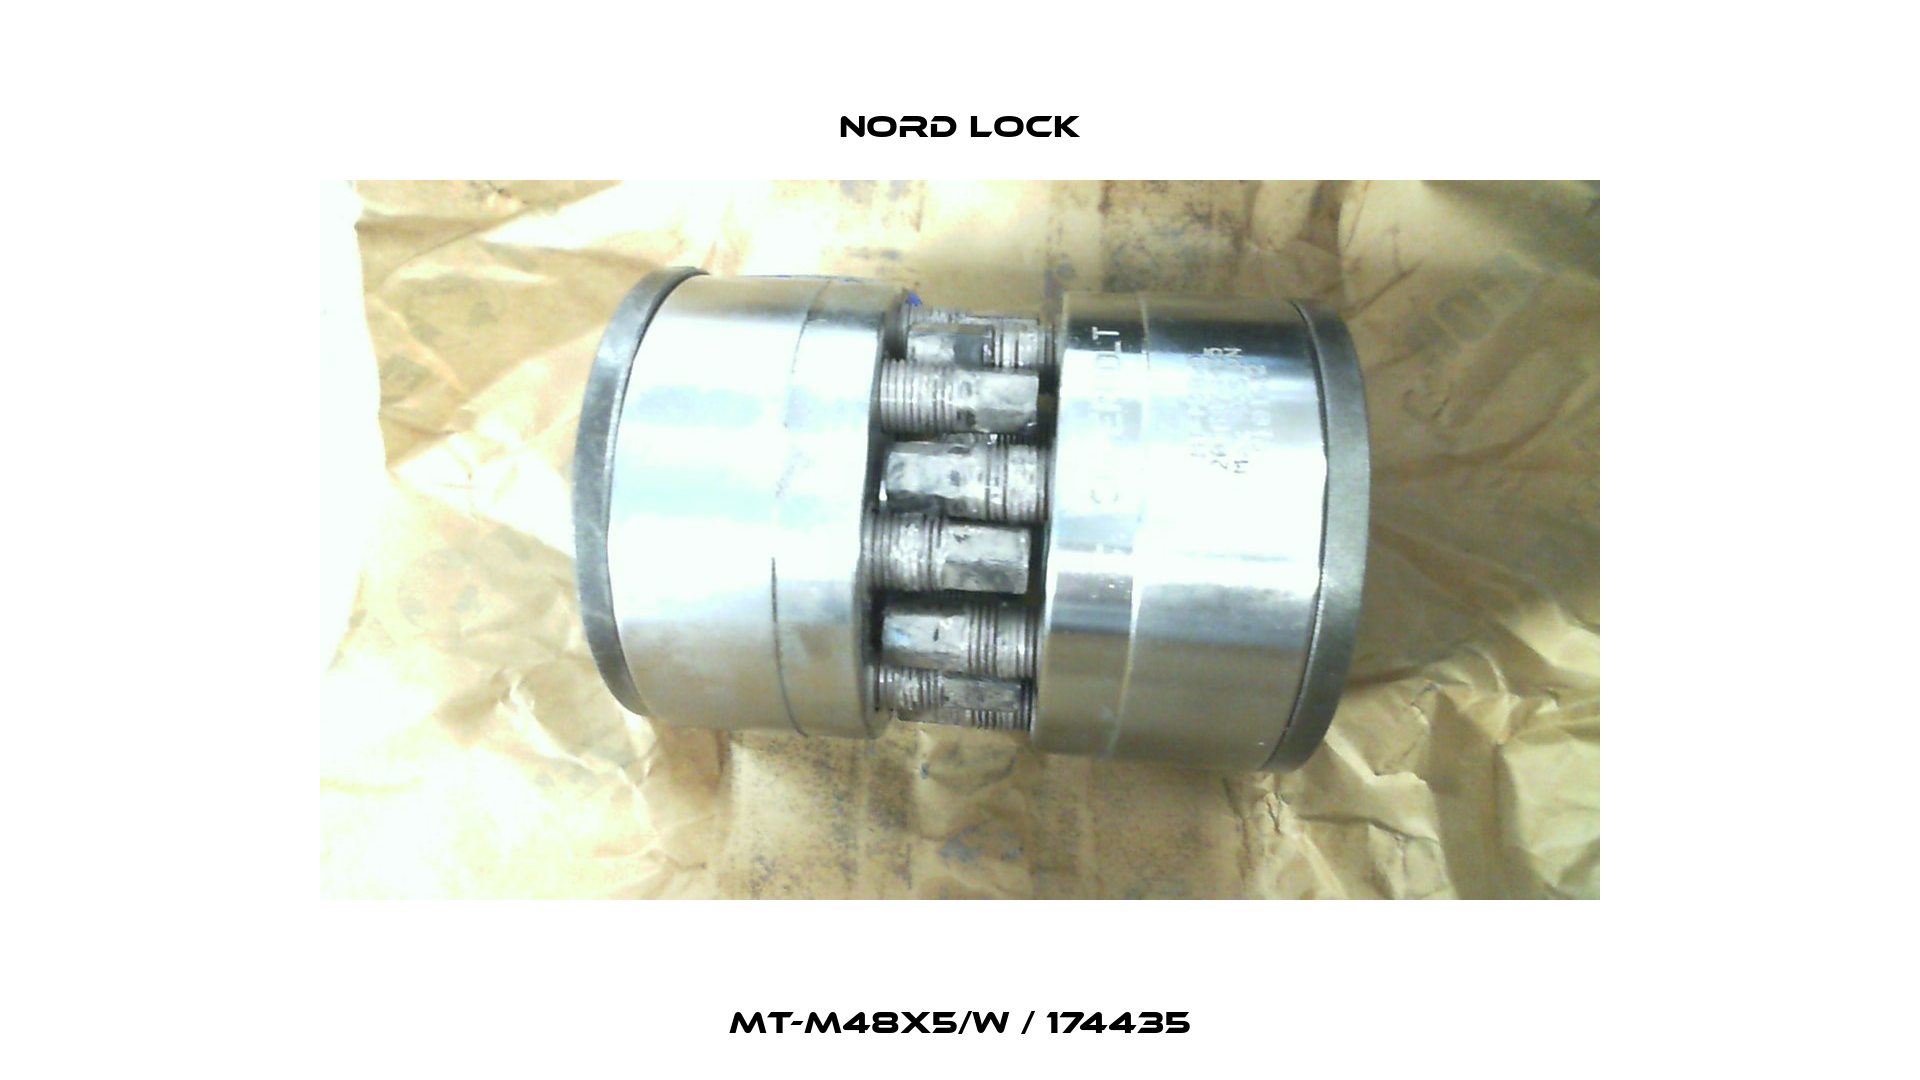 MT-M48x5/W / 174435 Nord Lock